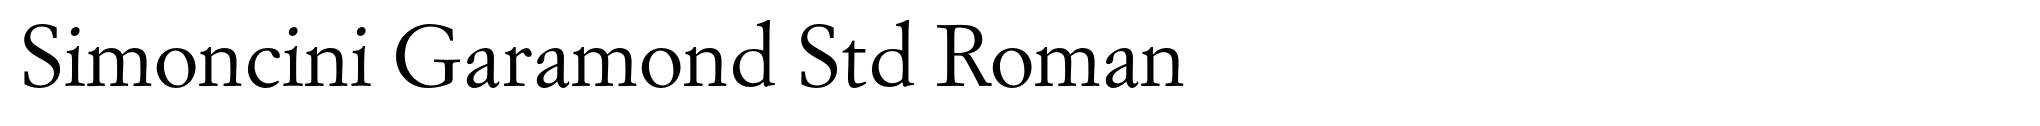 Simoncini Garamond Std Roman image